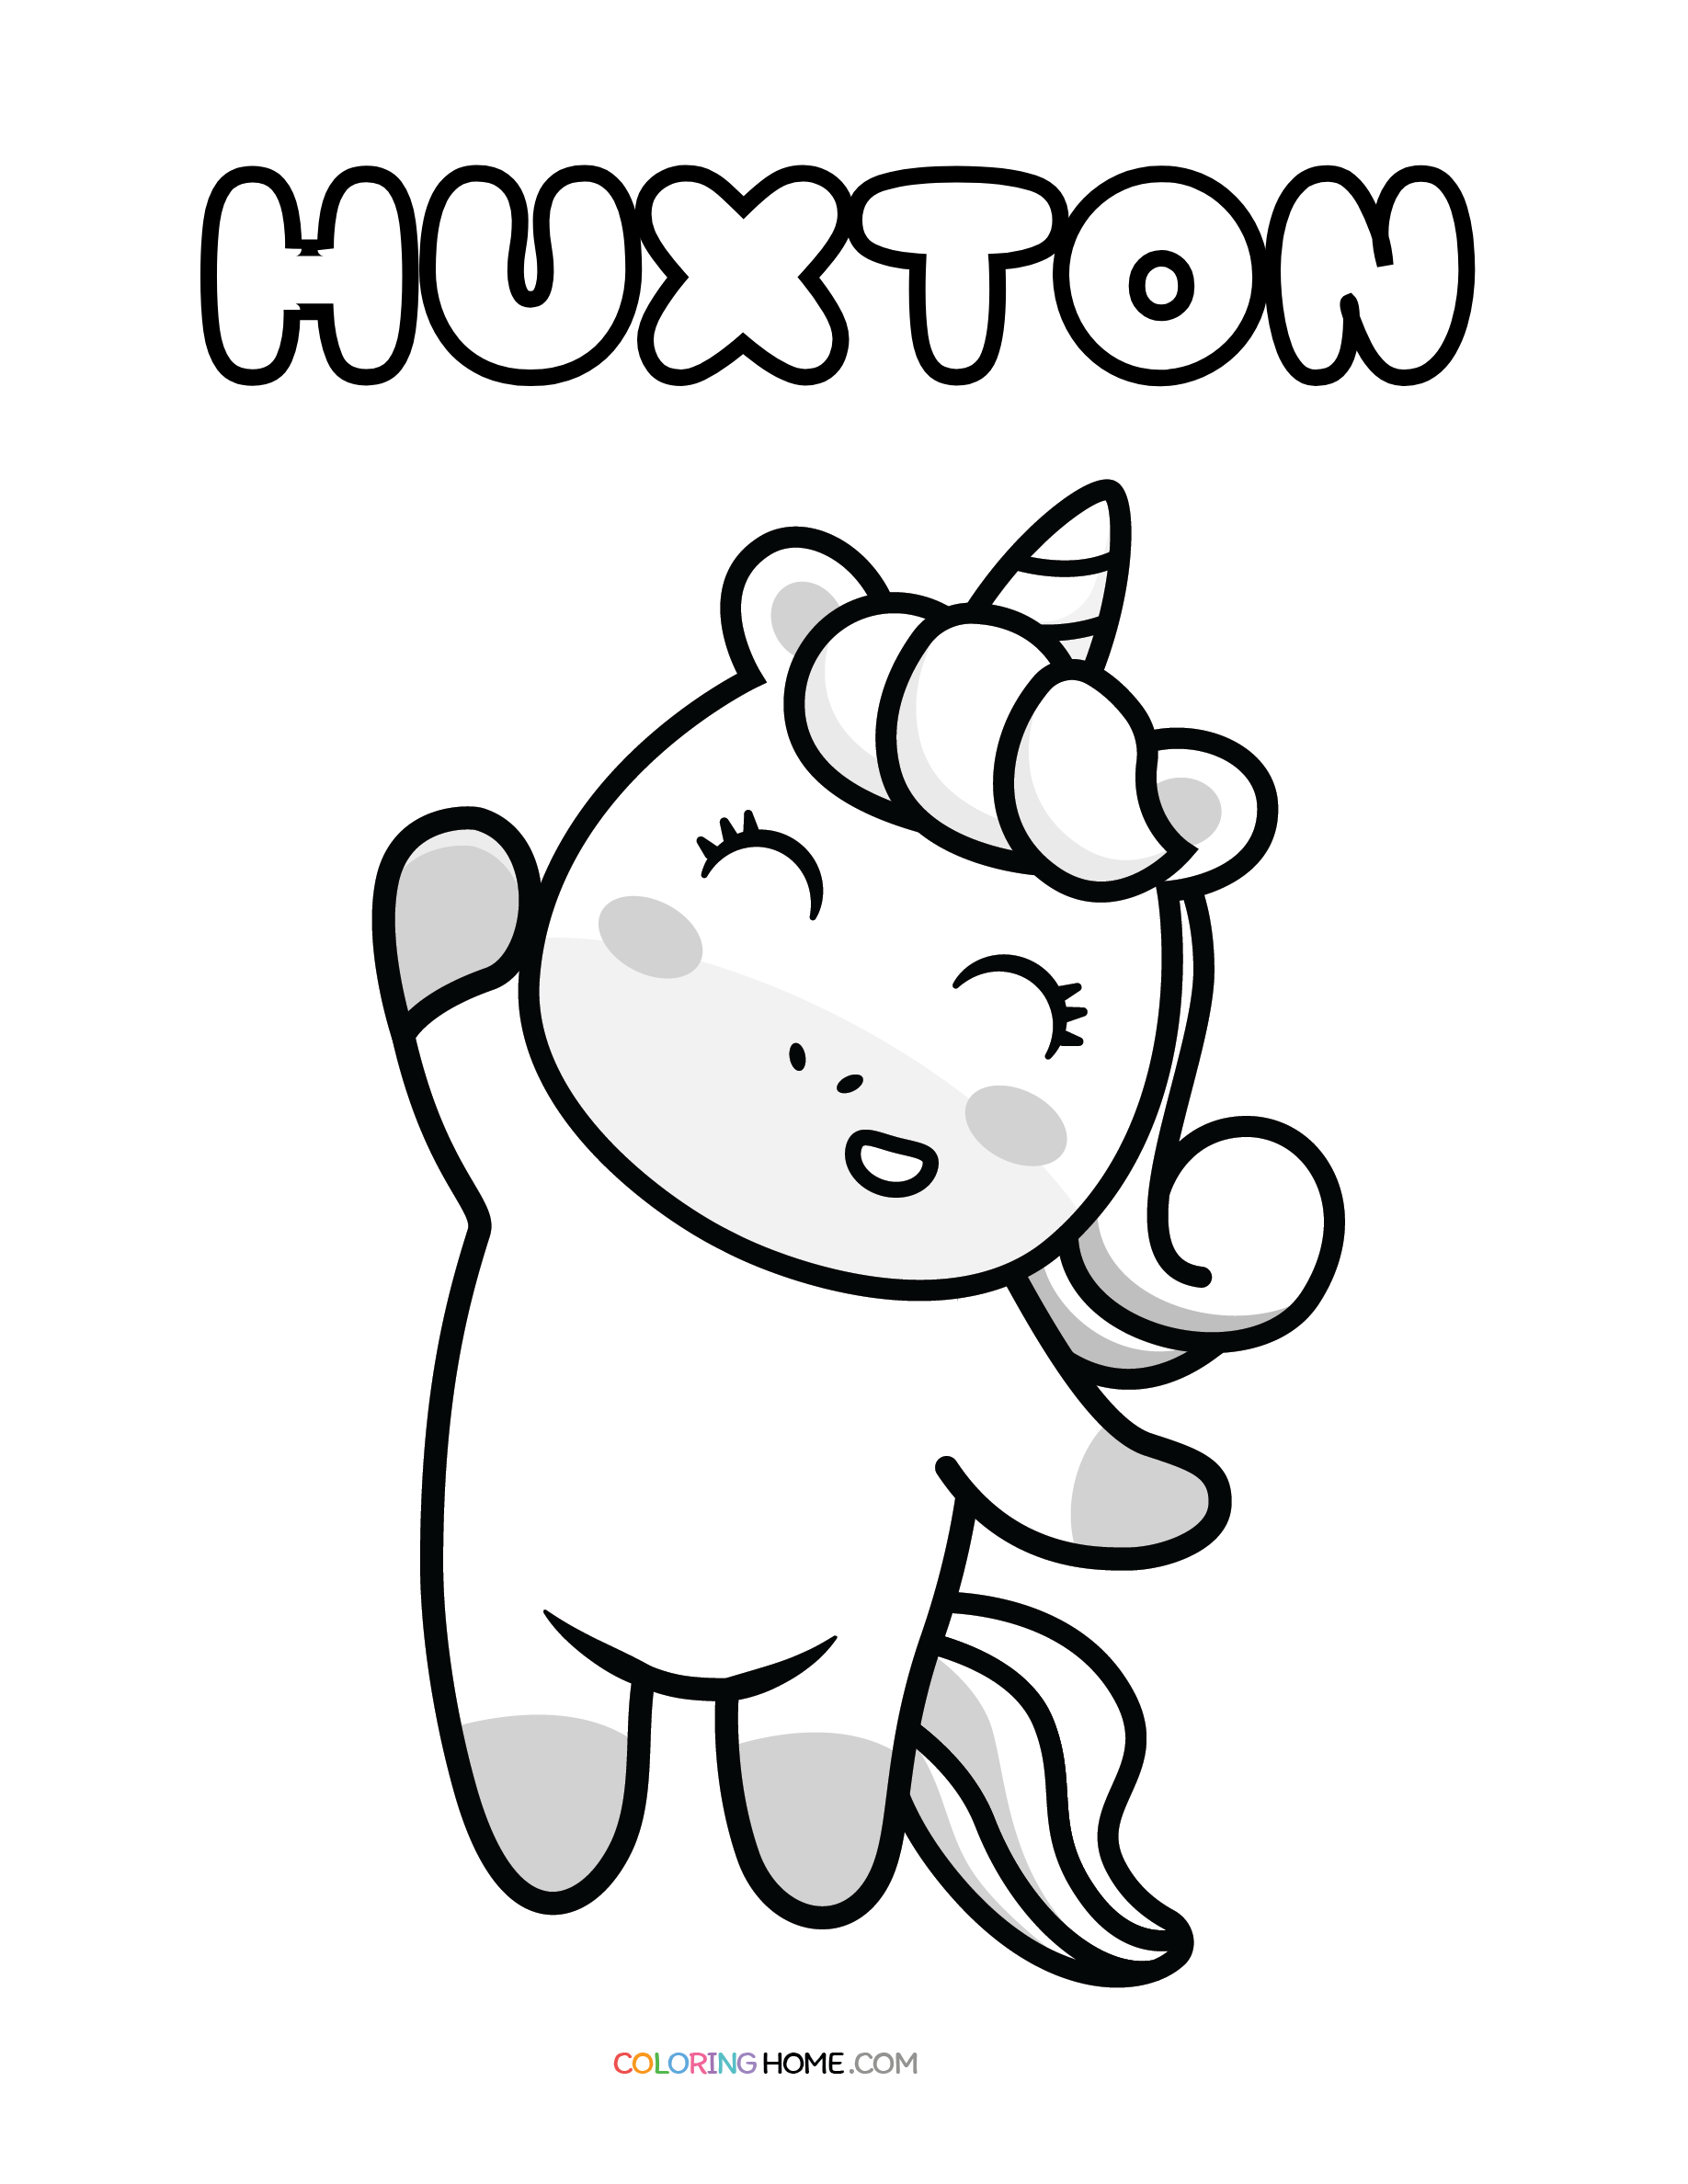 Huxton unicorn coloring page